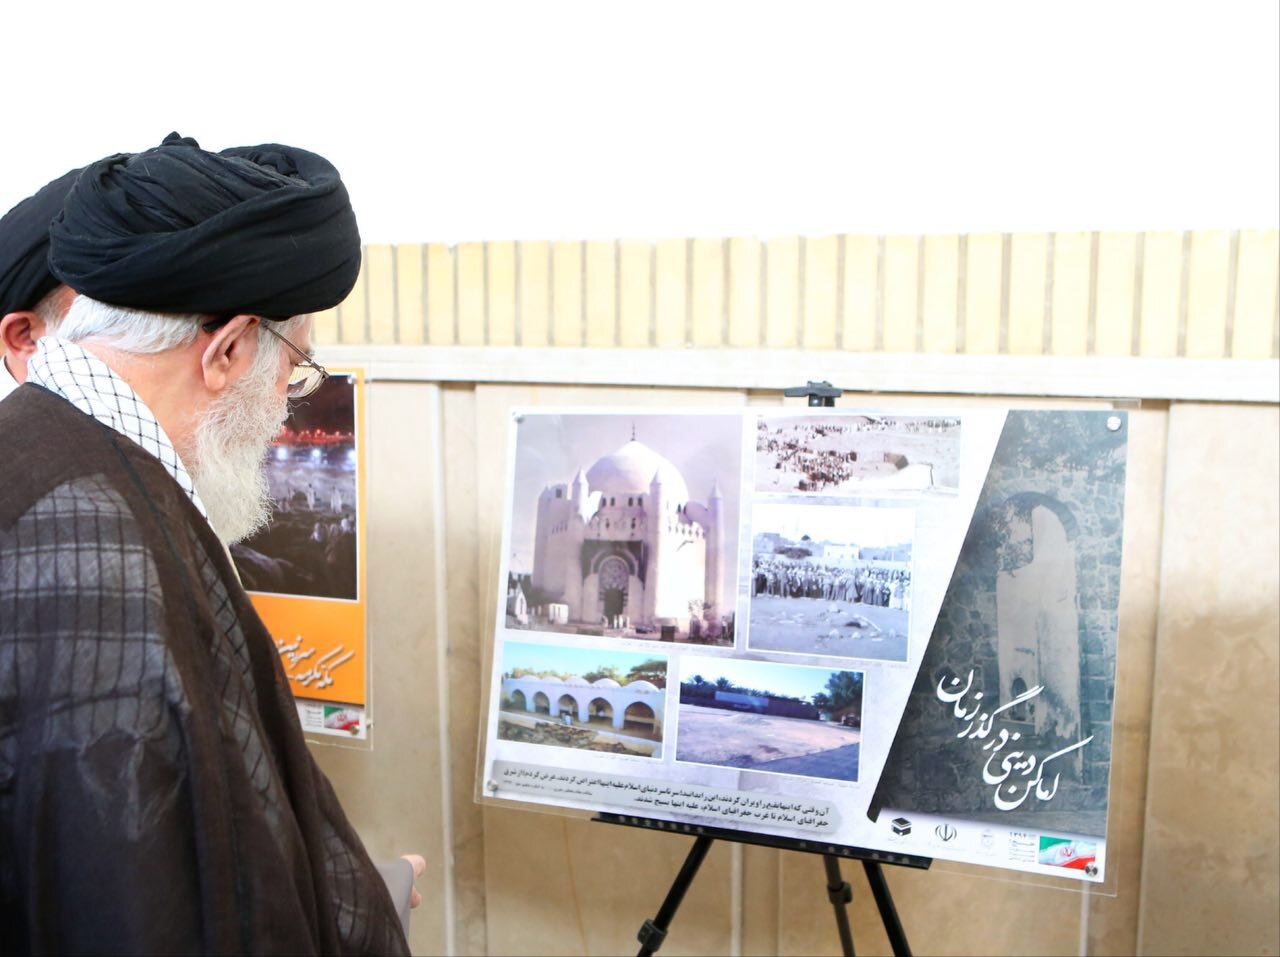 عکسی خاص از رهبر انقلاب مقابل آخرین تصویر به جا مانده از بارگاه امام حسن(ع)